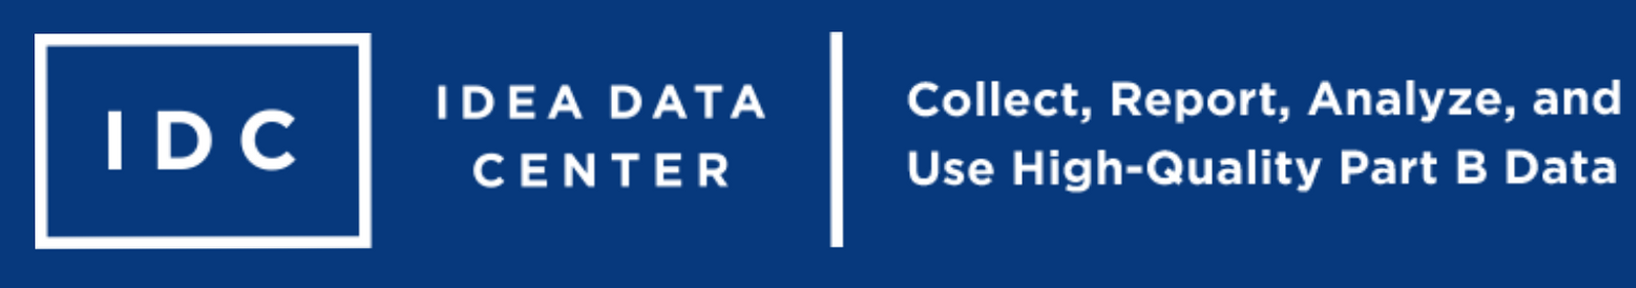 IDEA Data Center Logo Picture